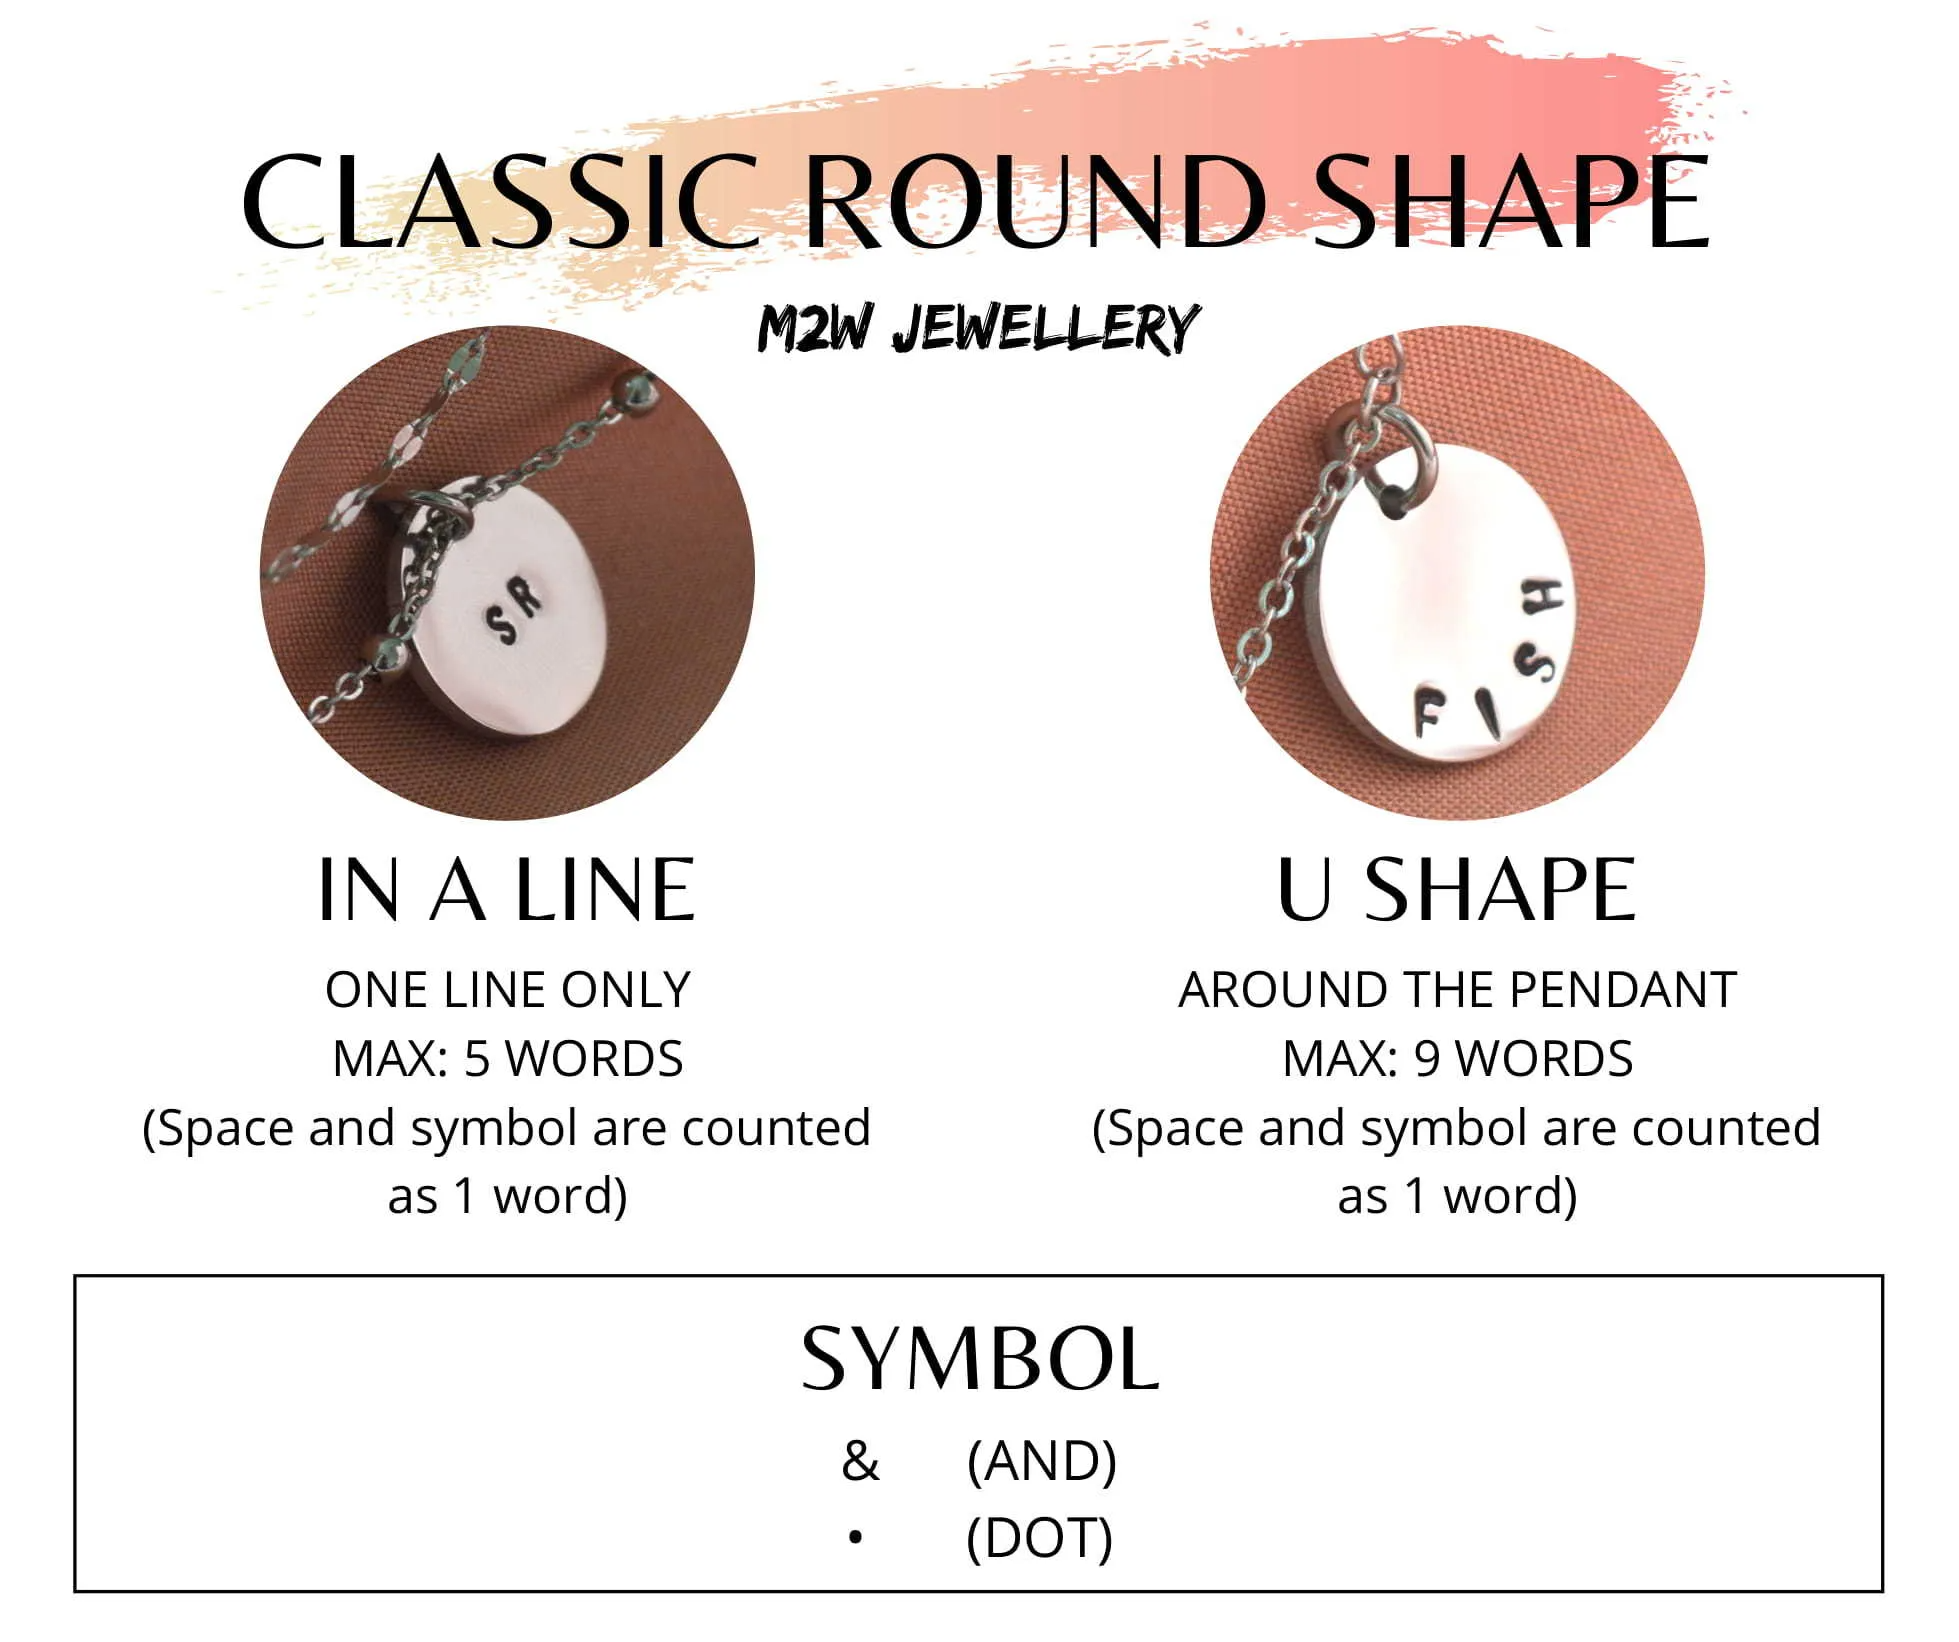 Round shaped pendant